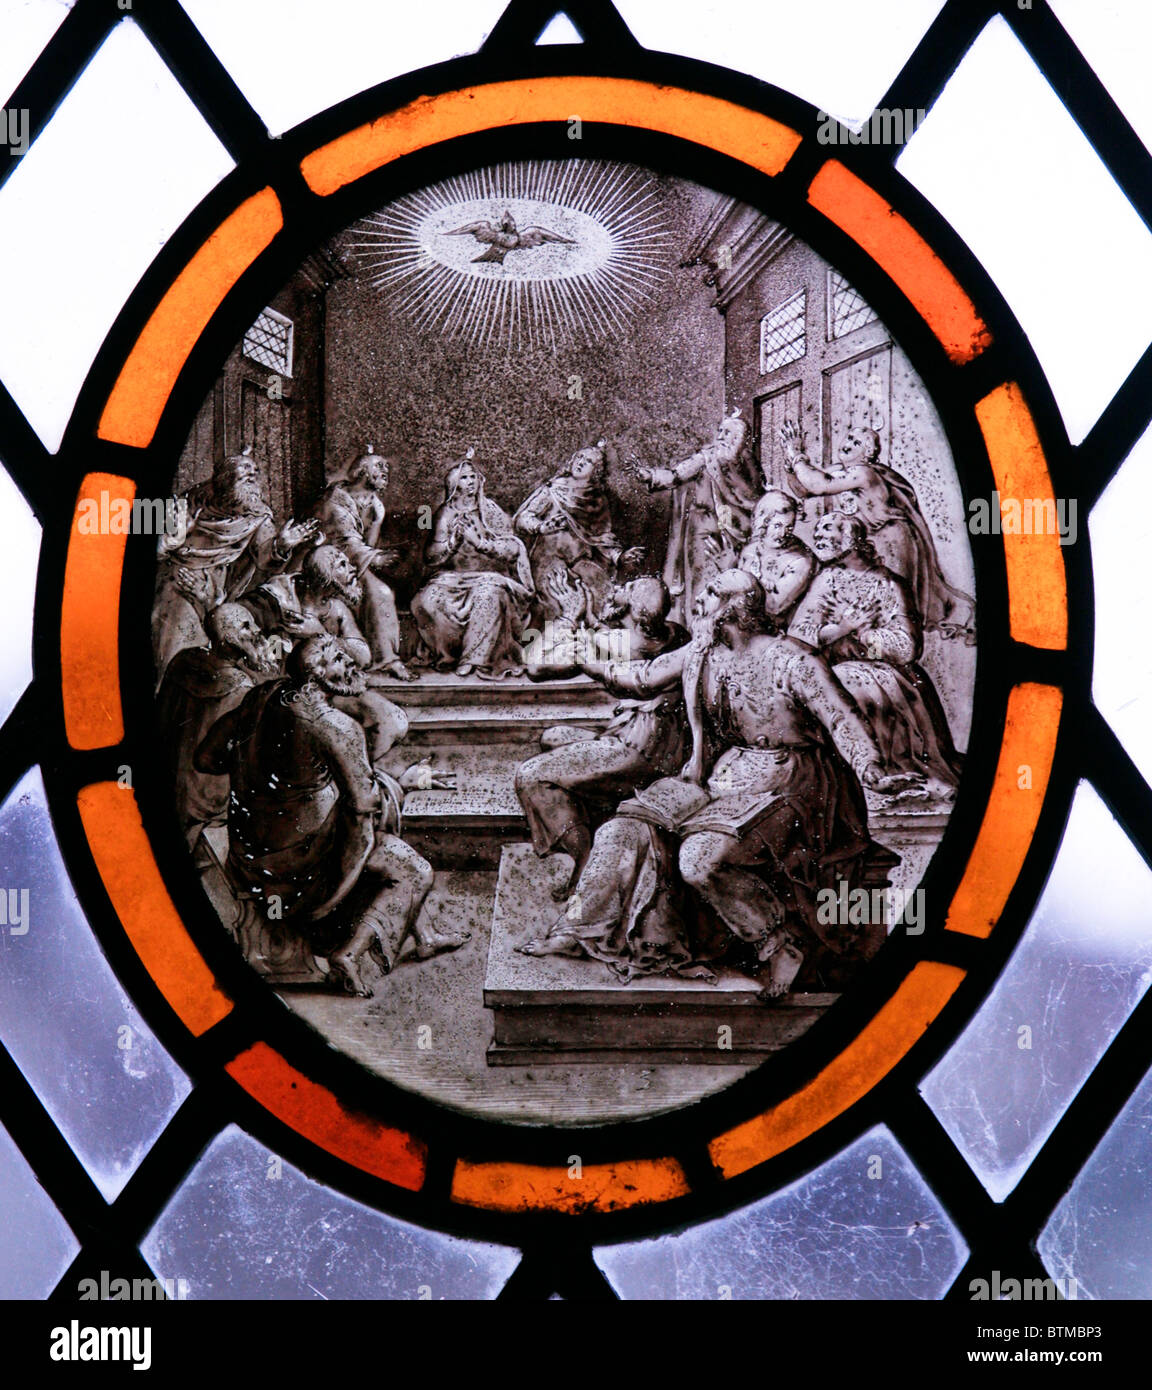 Ein Glasfenster, die Darstellung der Herabkunft des Heiligen Geistes auf die Nachfolger Jesu an Pfingsten, flämische Schule, C17th Stockfoto